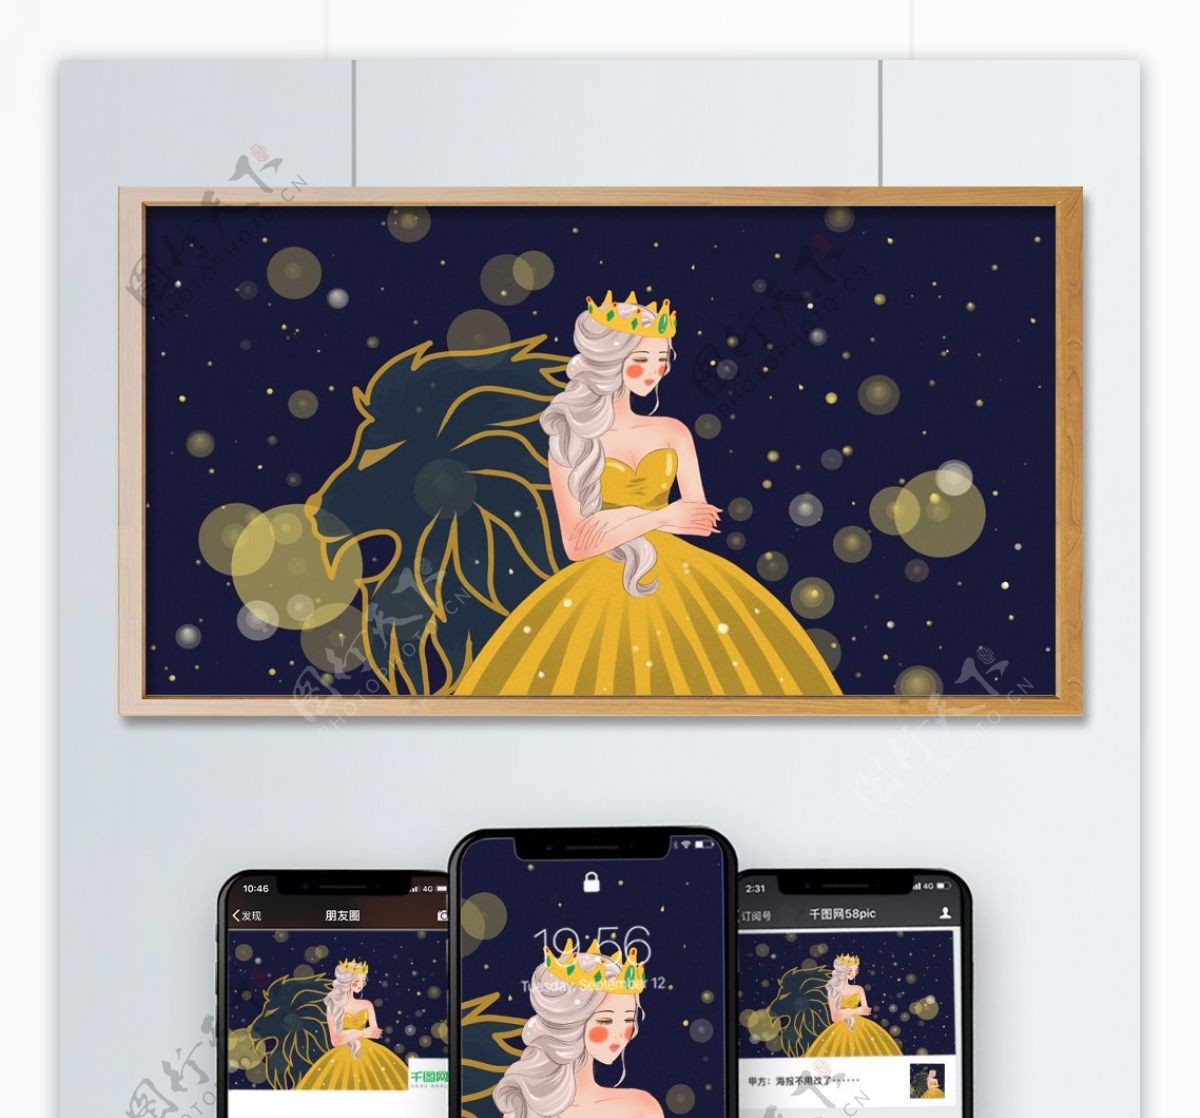 十二星座之狮子座戴着王冠的女王唯美插画